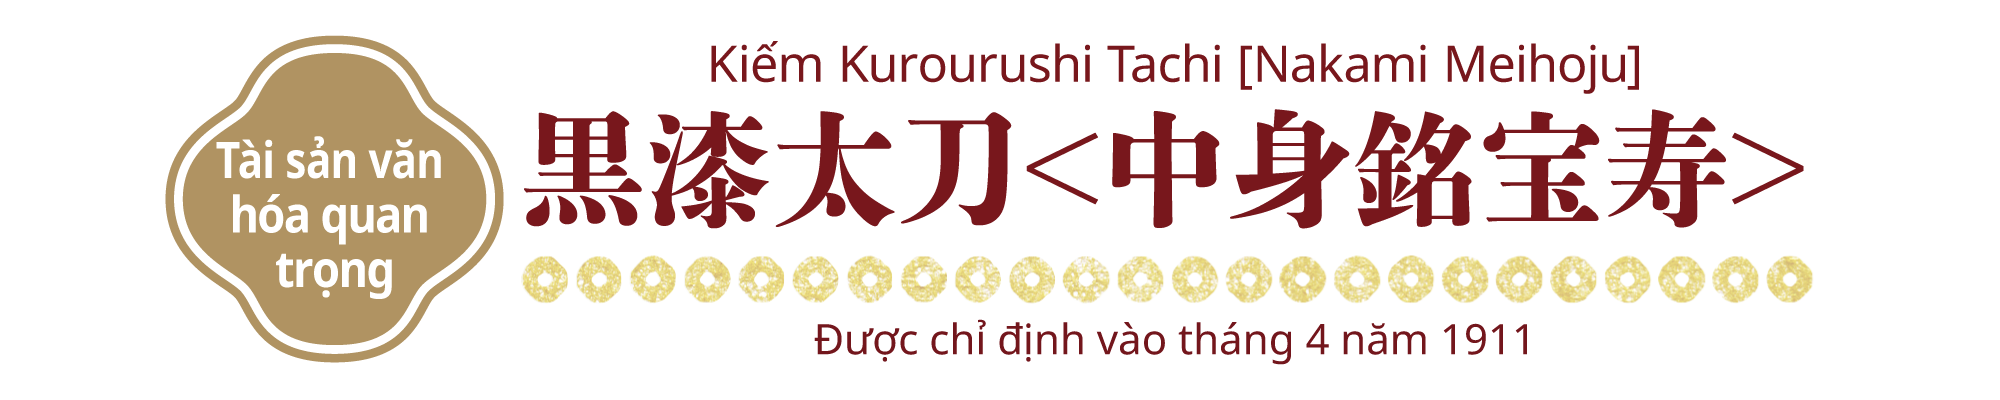 [Tài sản văn hóa quan trọng]Kiếm Kurourushi Tachi [Nakami Meihoju], Được chỉ định vào tháng 4 năm 1911